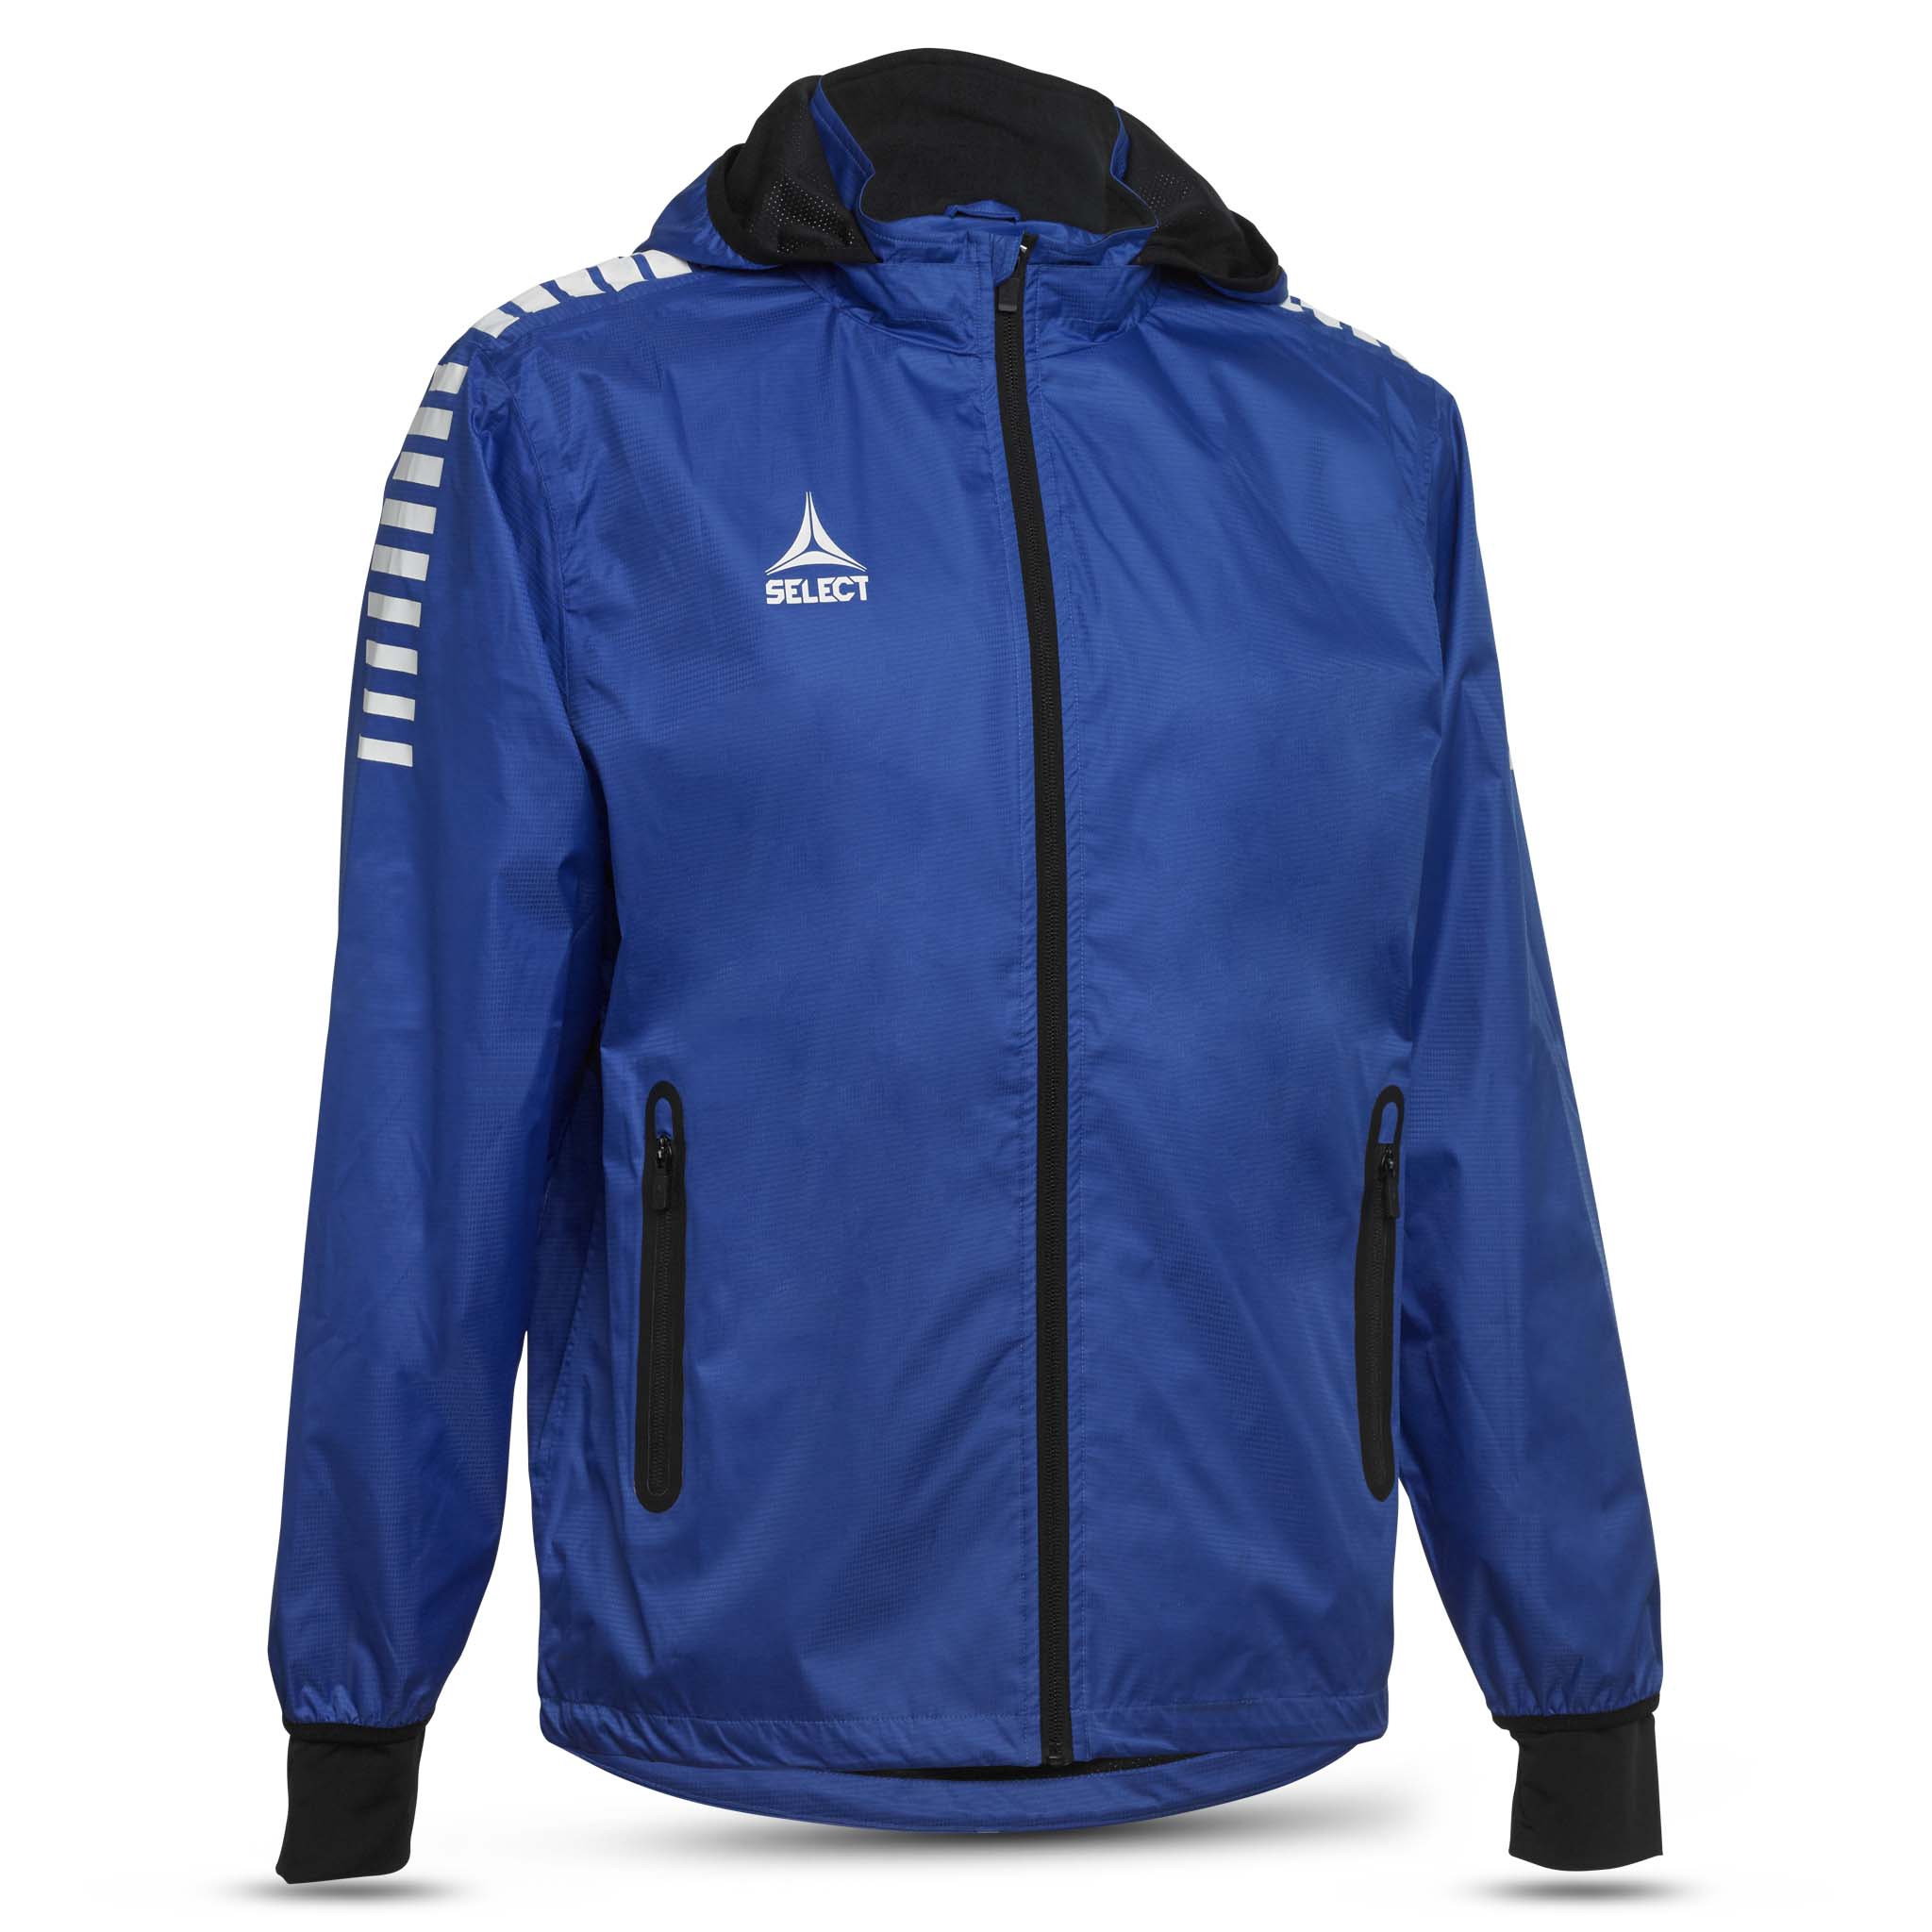 All-weather jacket - Monaco #colour_blue